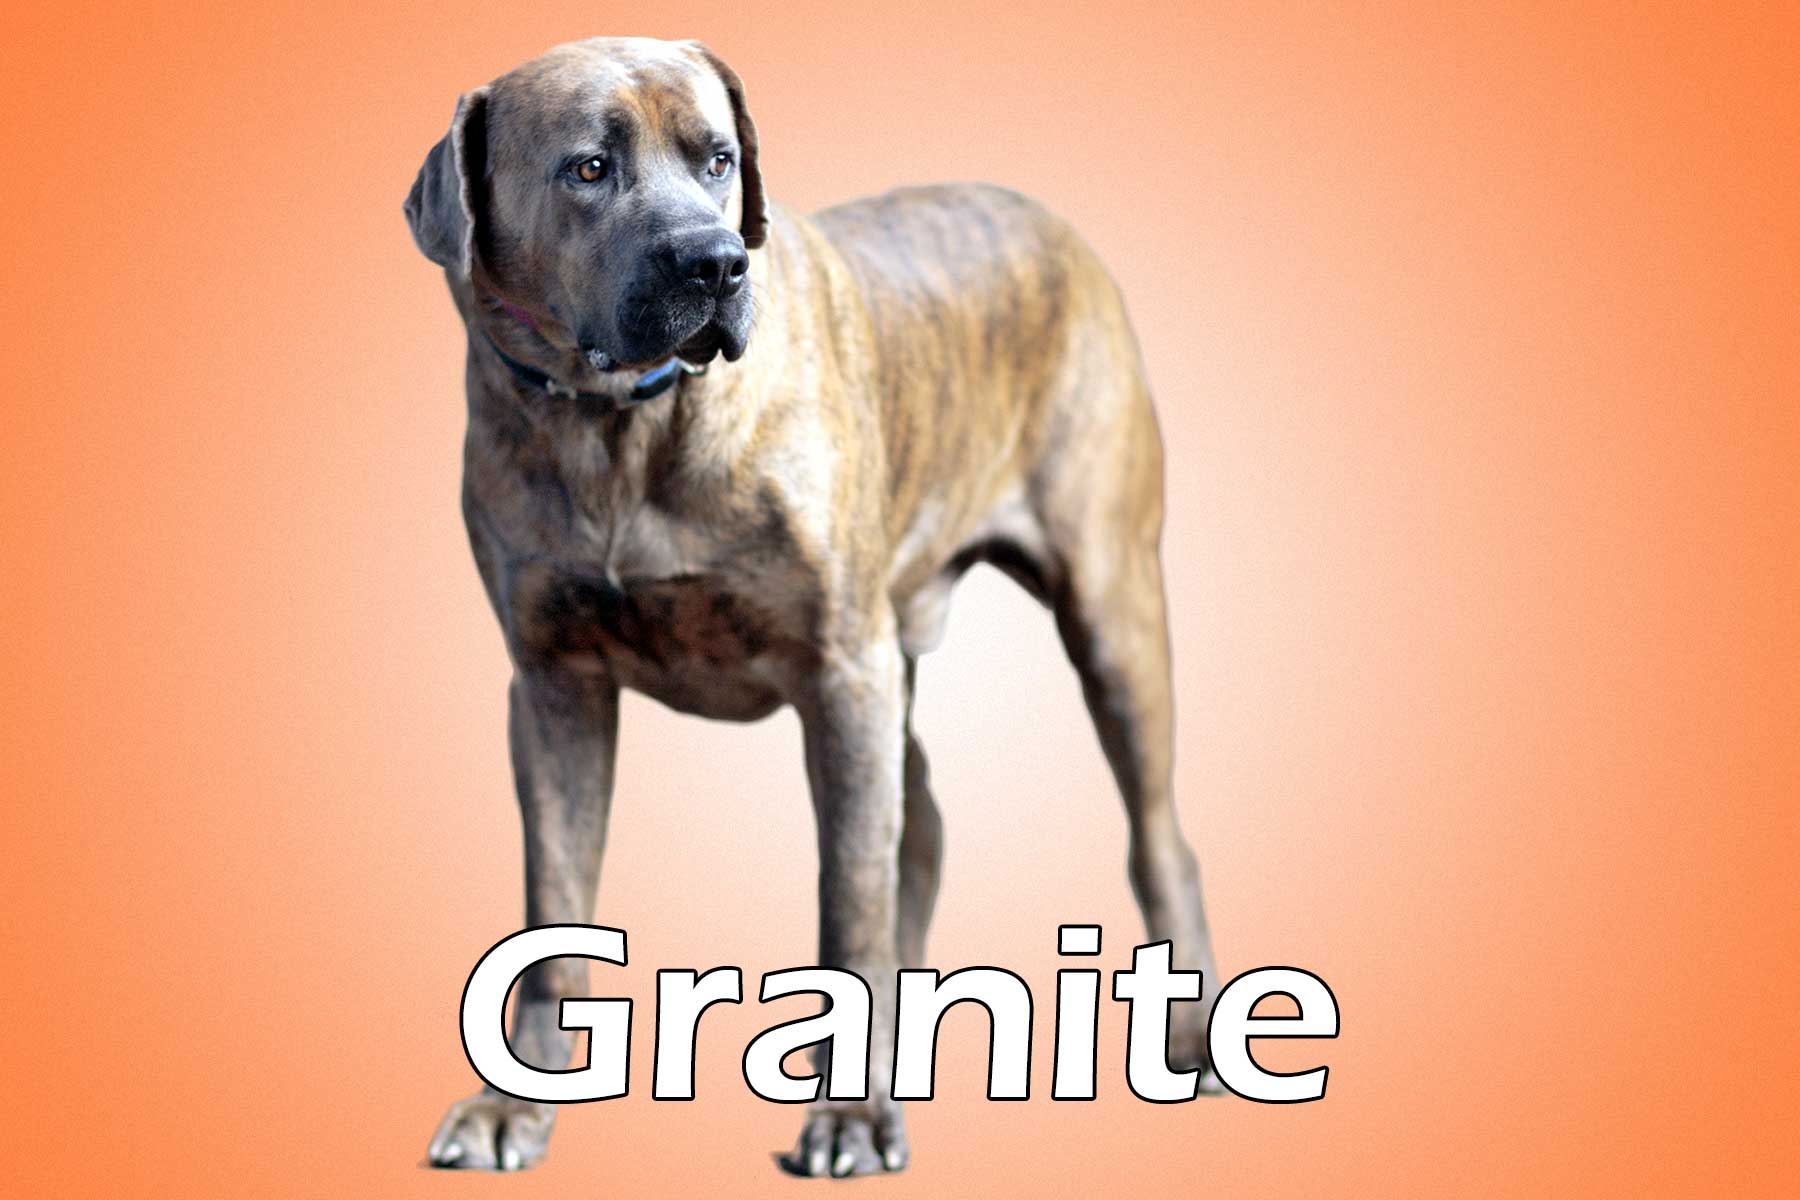 Granite_20130916_093928_052011001770_29038b4_Granite